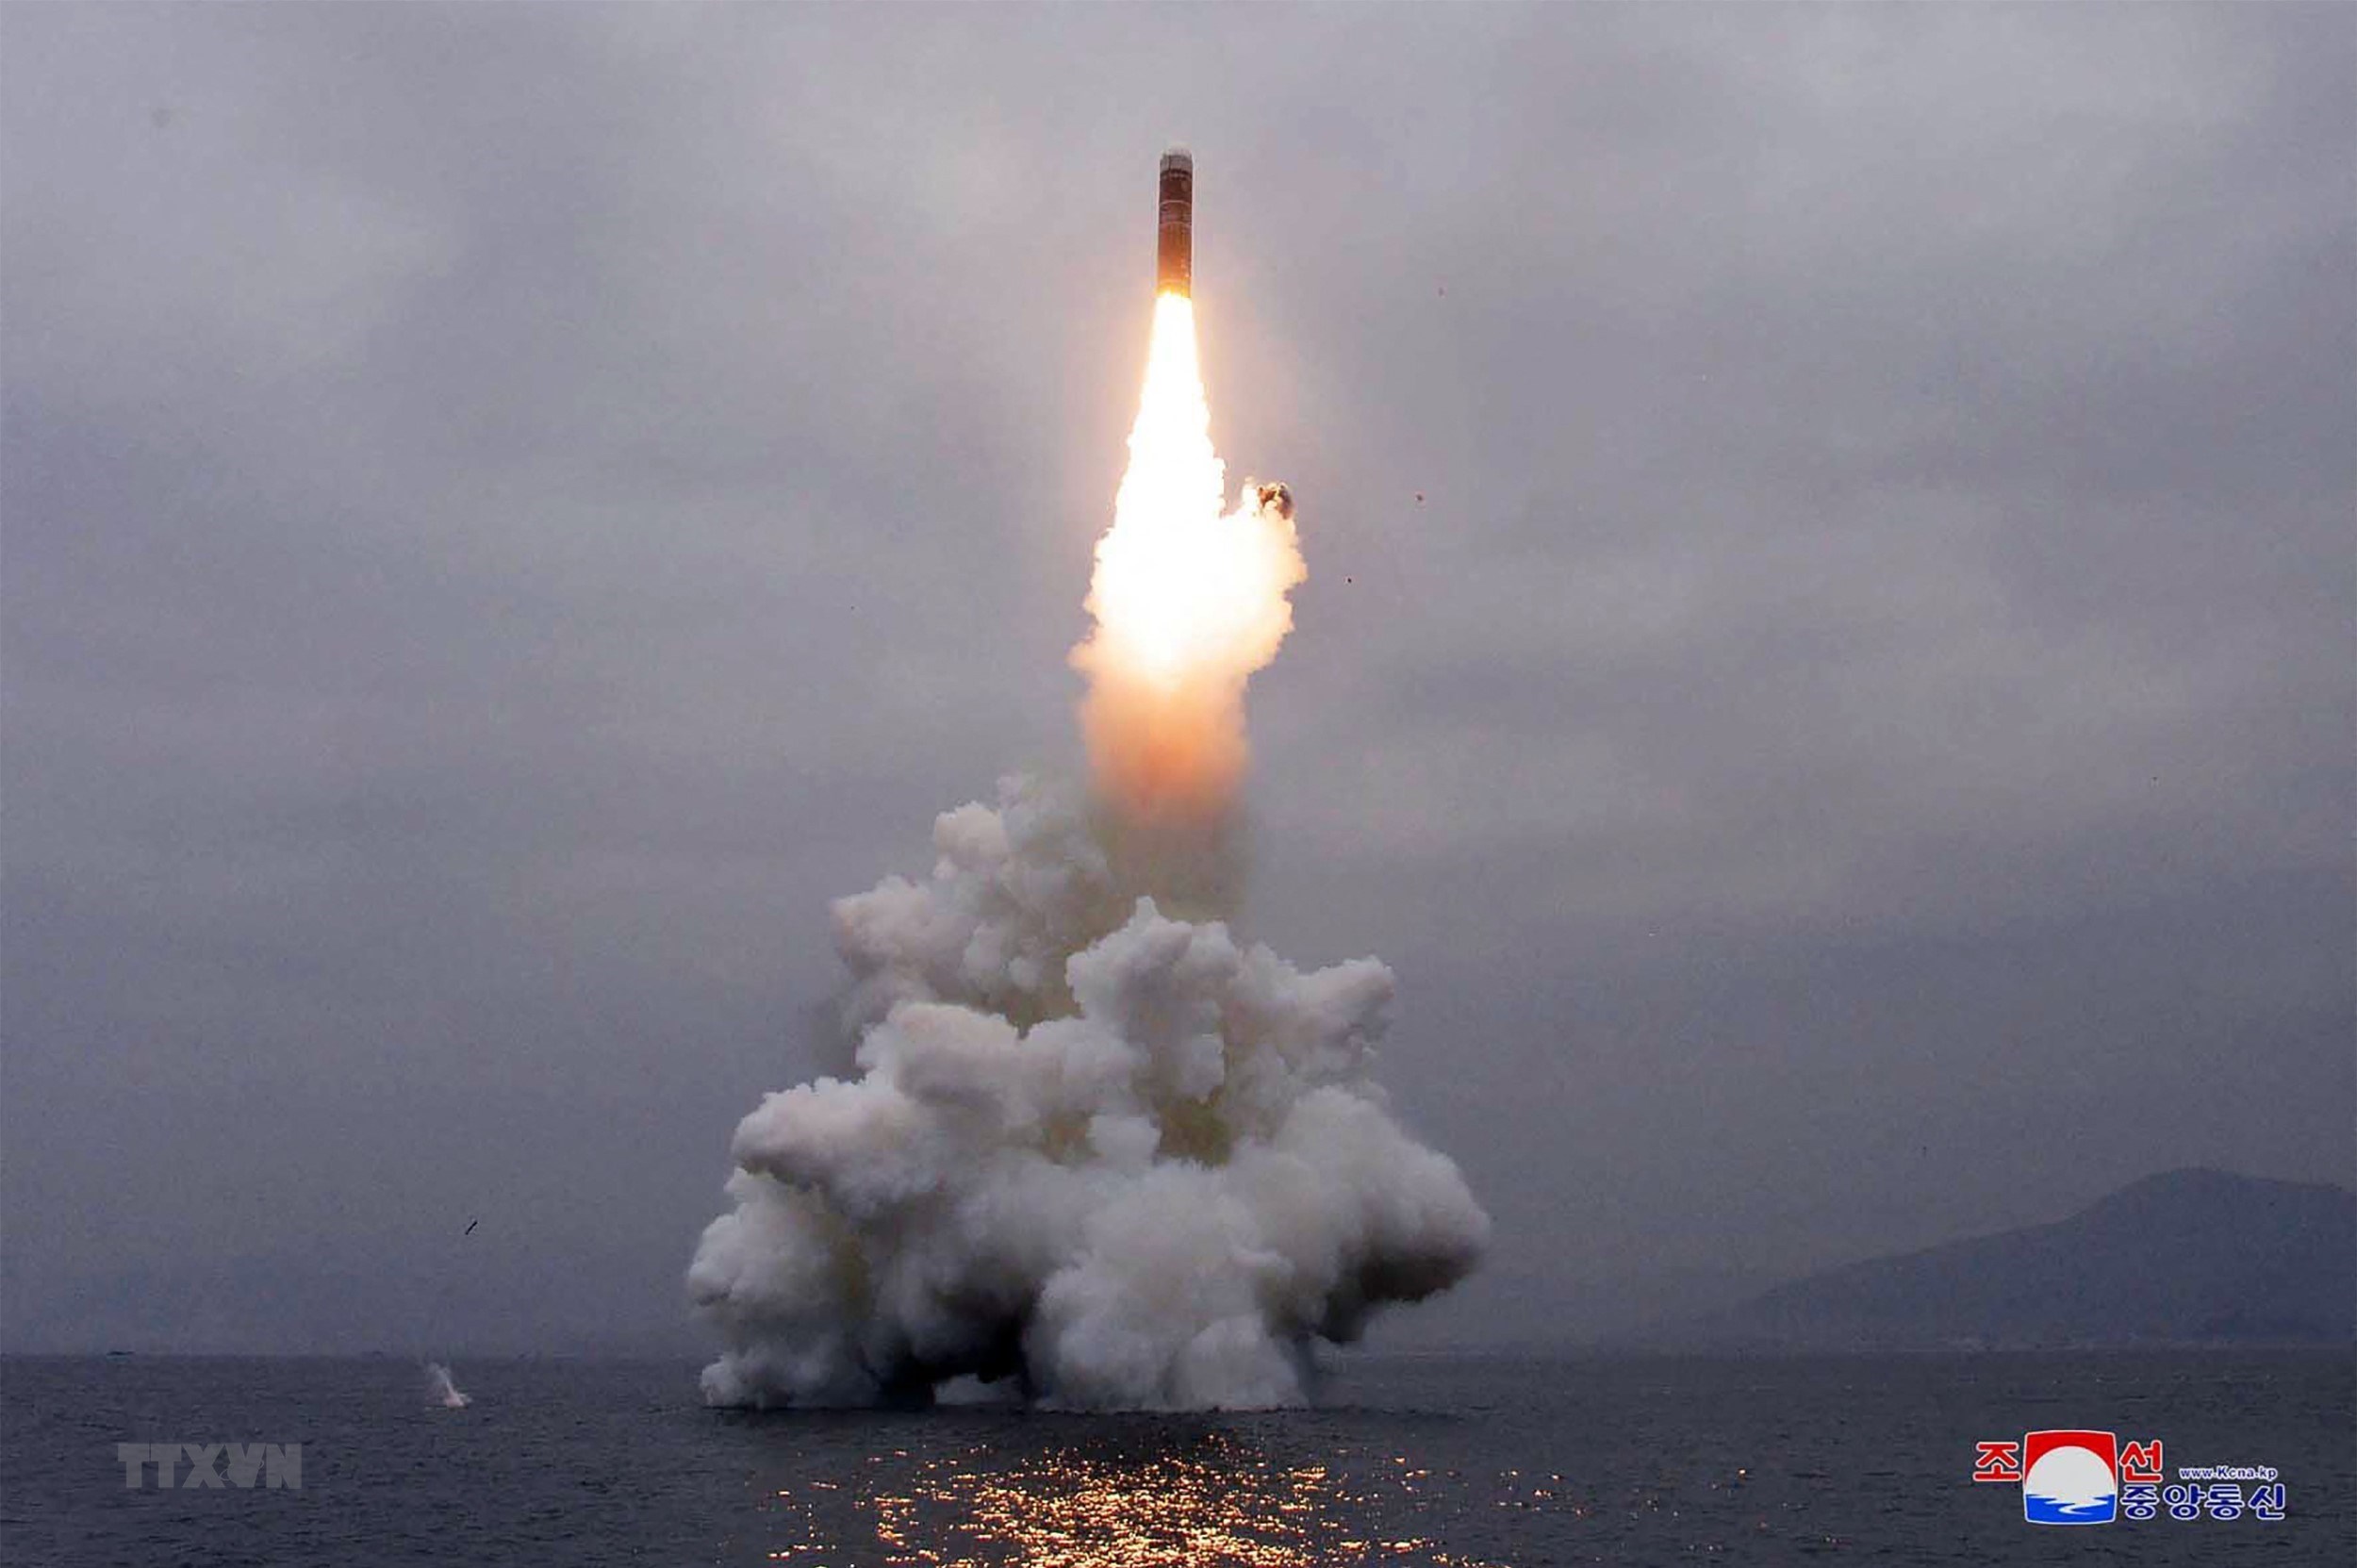 Tên lửa kiểu mới Pukguksong-3 của Triều Tiên được phóng thử nghiệm từ tàu ngầm ở ngoài khơi Vịnh Wonsan.